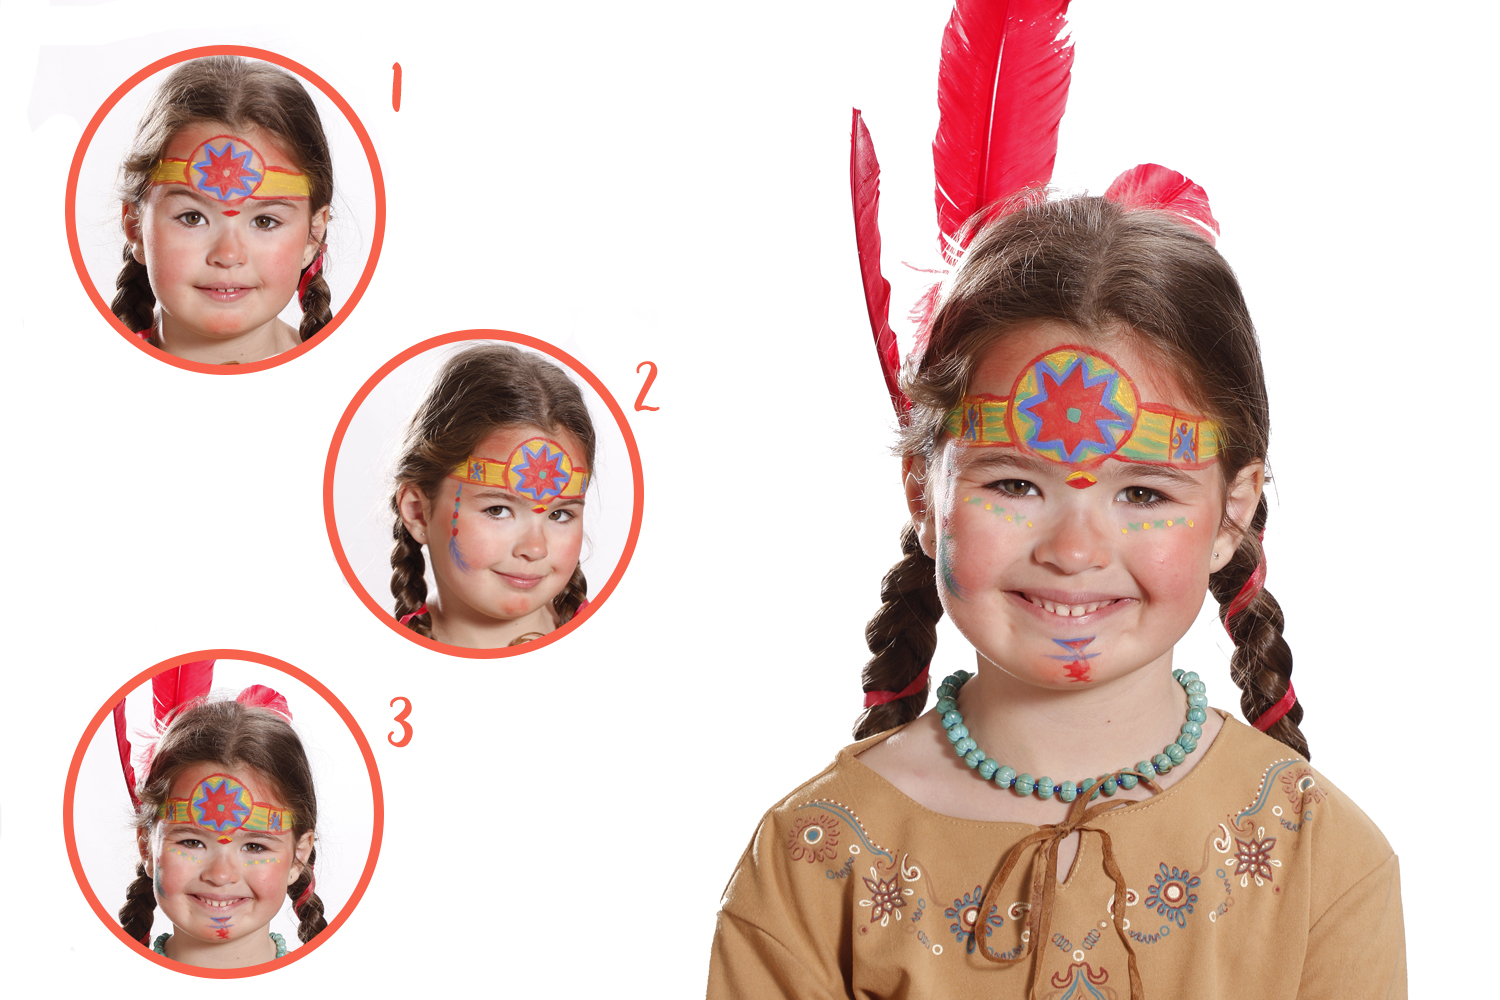 Couleurs de Maquillage pour Enfants, Palette de Maquillage 15 Couleurs 2  Stylos + 4 Modèles de Peinture pour le Visage des Enfants pour les Fêtes d' Enfants et la Peinture de Carnaval 